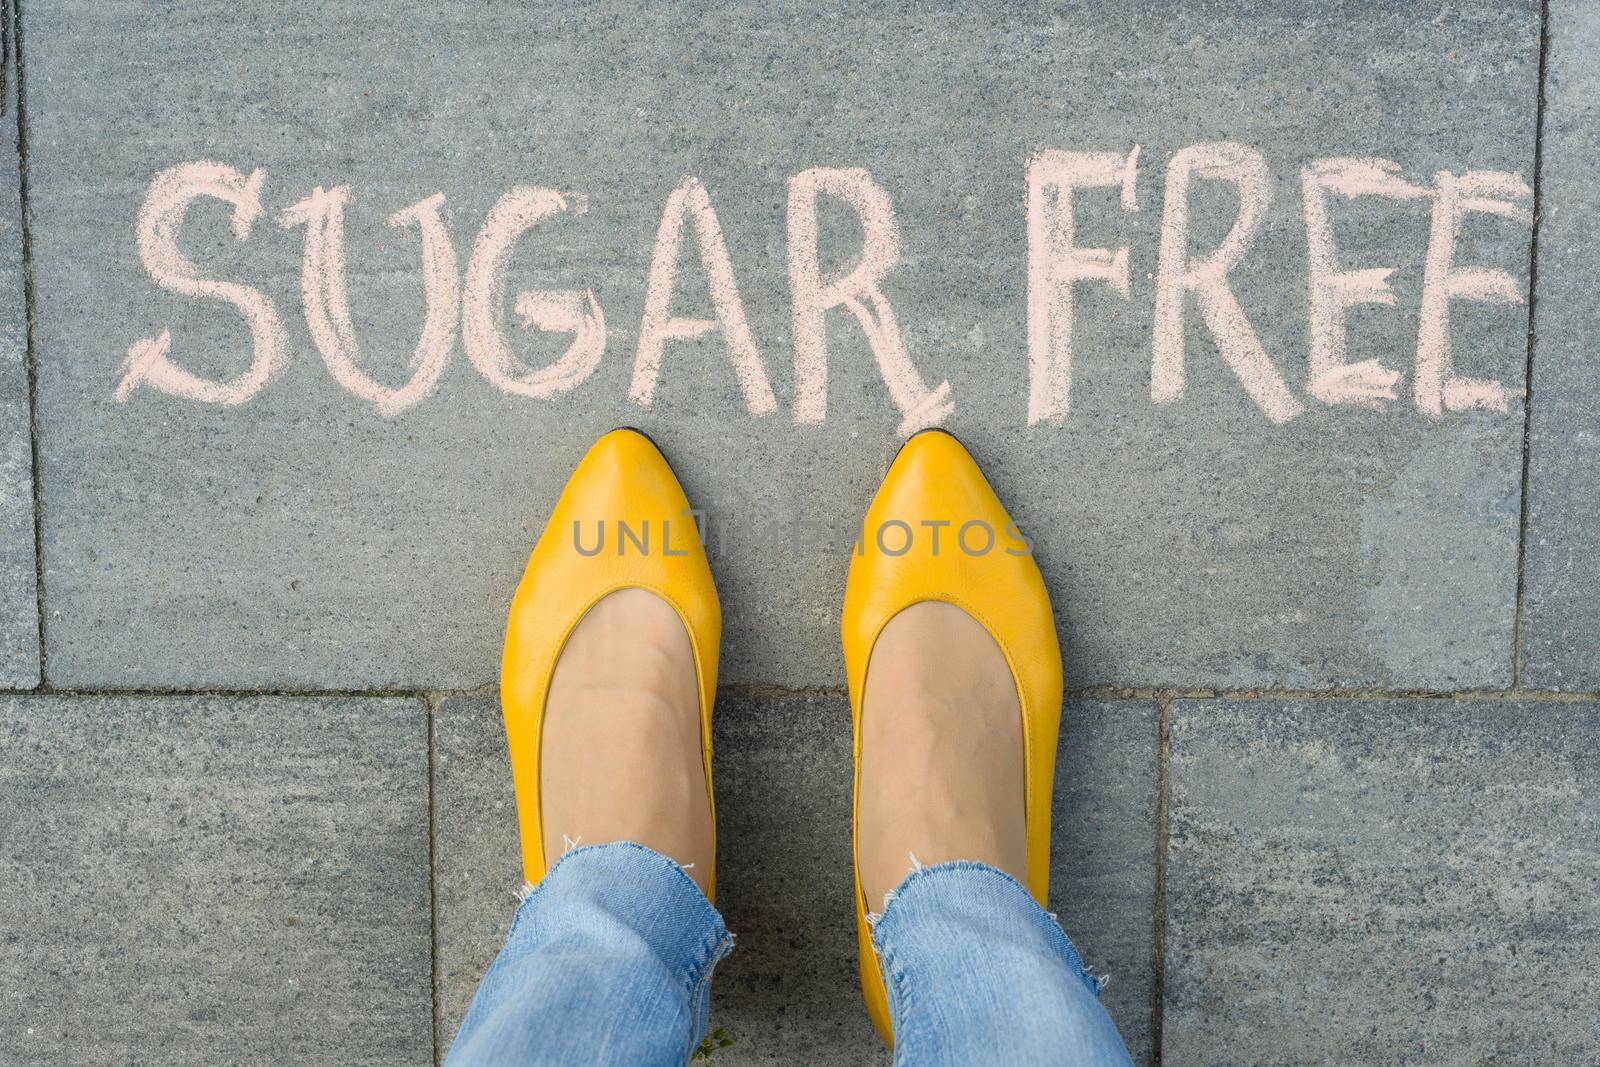 Female feet with text sugar free written on grey sidewalk.